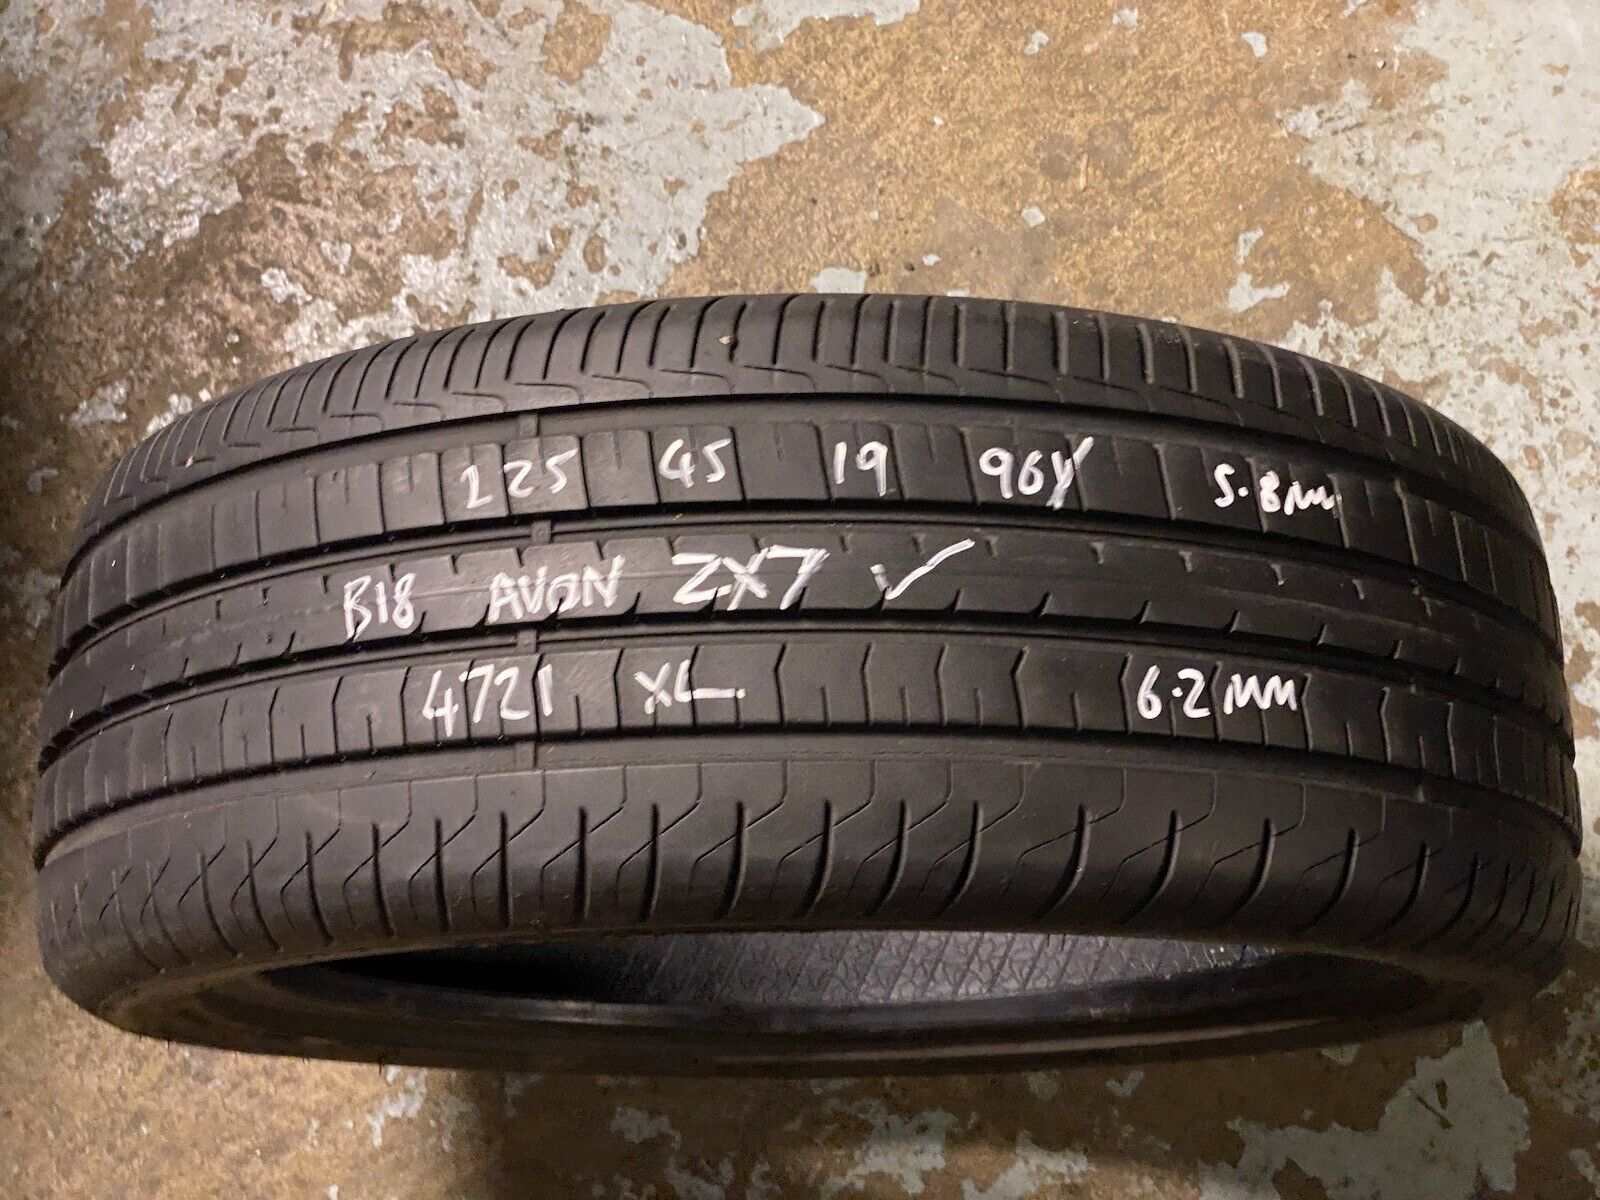 1x 225 45 19 Avon ZX7 96Y Tyre DOT 4721 6mm Part Worn XL